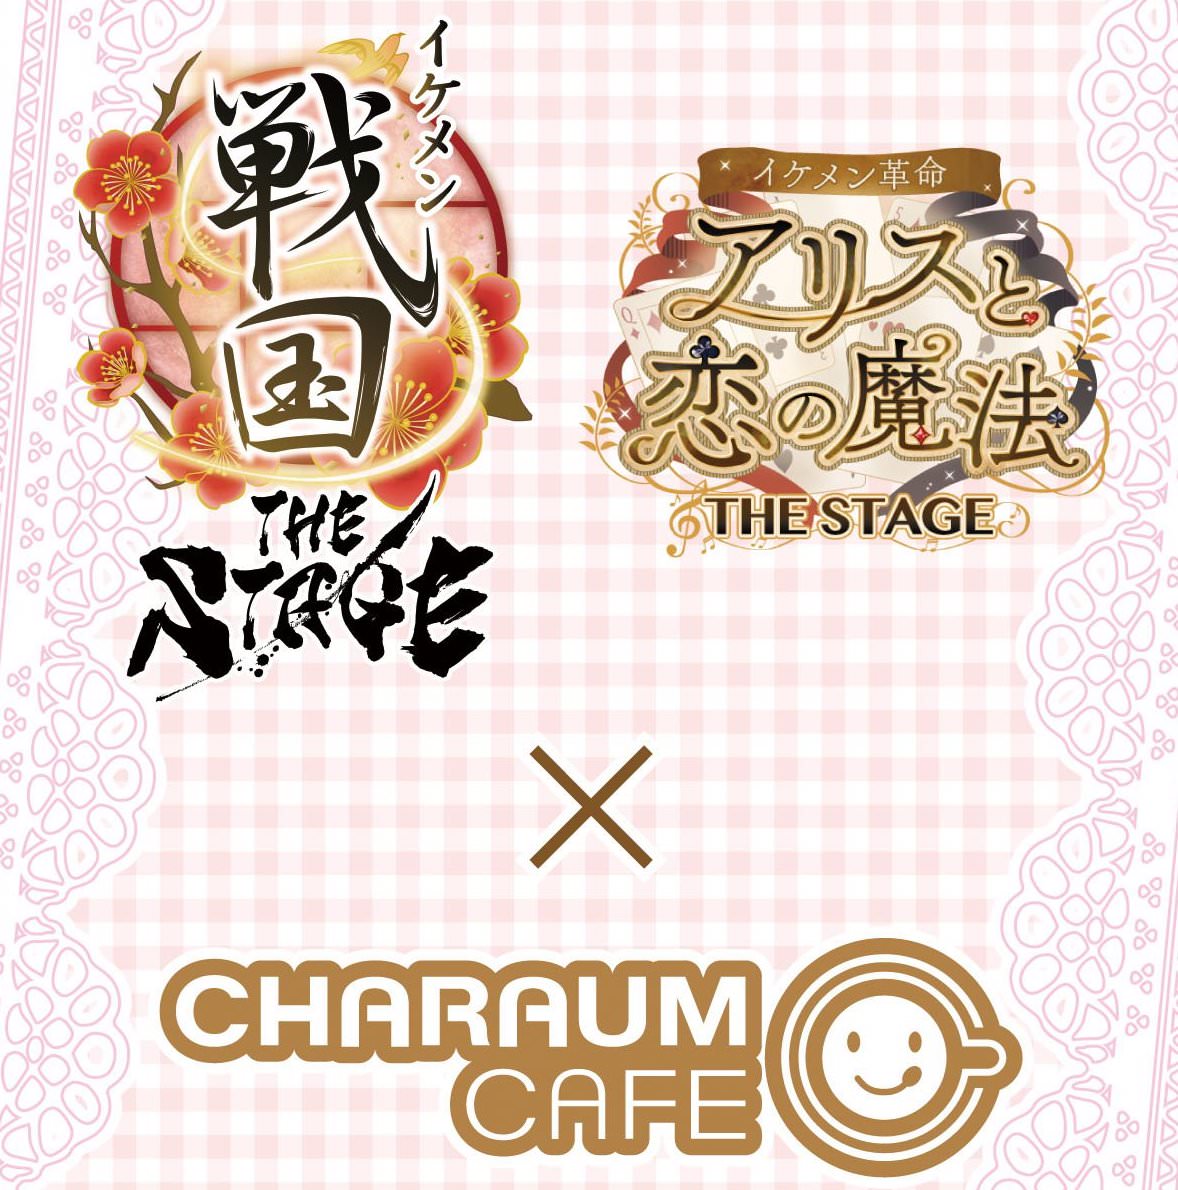 イケメン戦国・革命 THE STAGE × キャラウムカフェ池袋 9/6-10/13 開催!